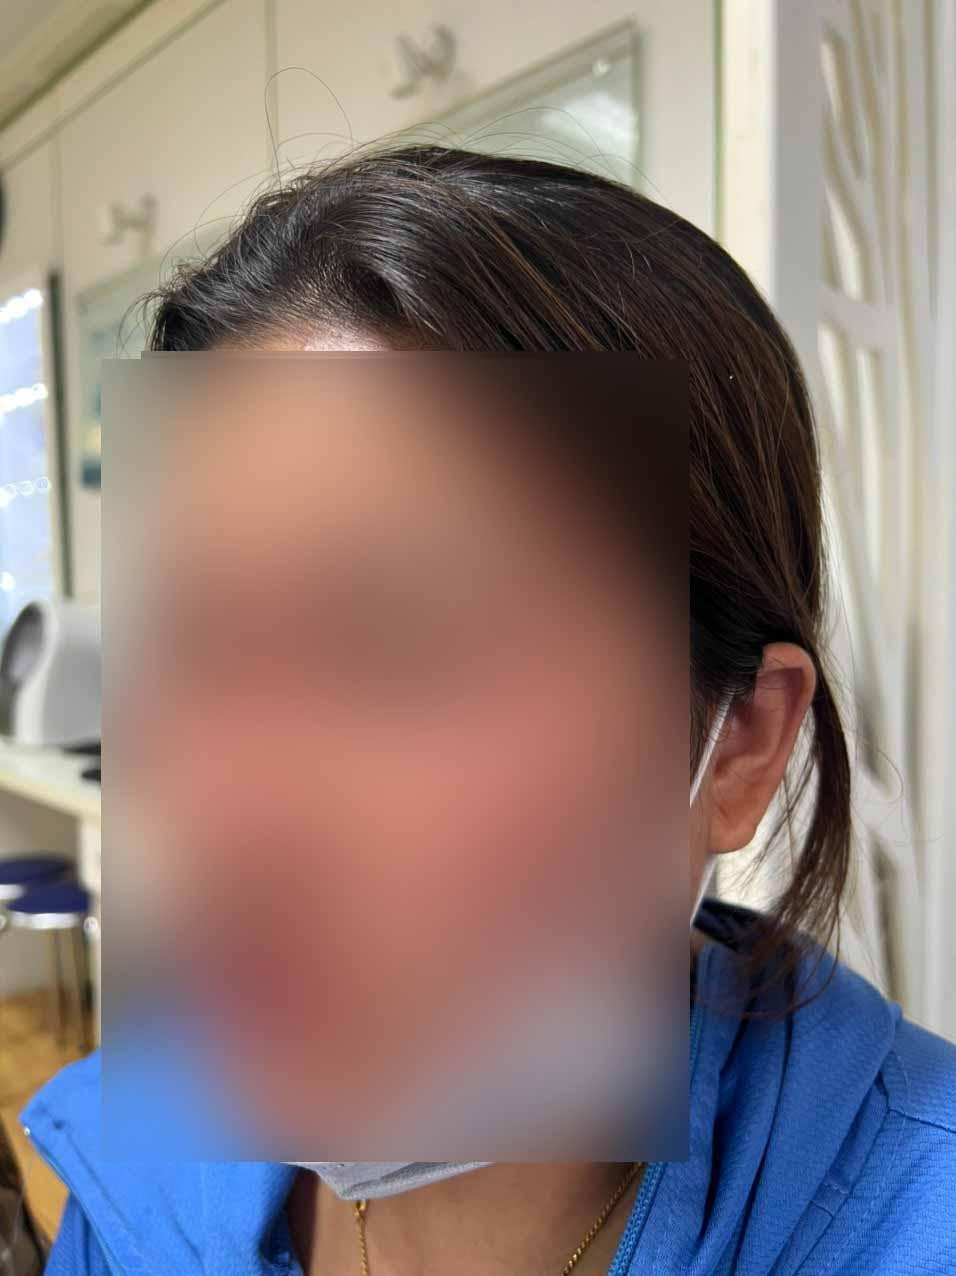 Tiêm chất làm đầy mũi để đổi vận mệnh, người phụ nữ nhập viện cấp cứu - 1